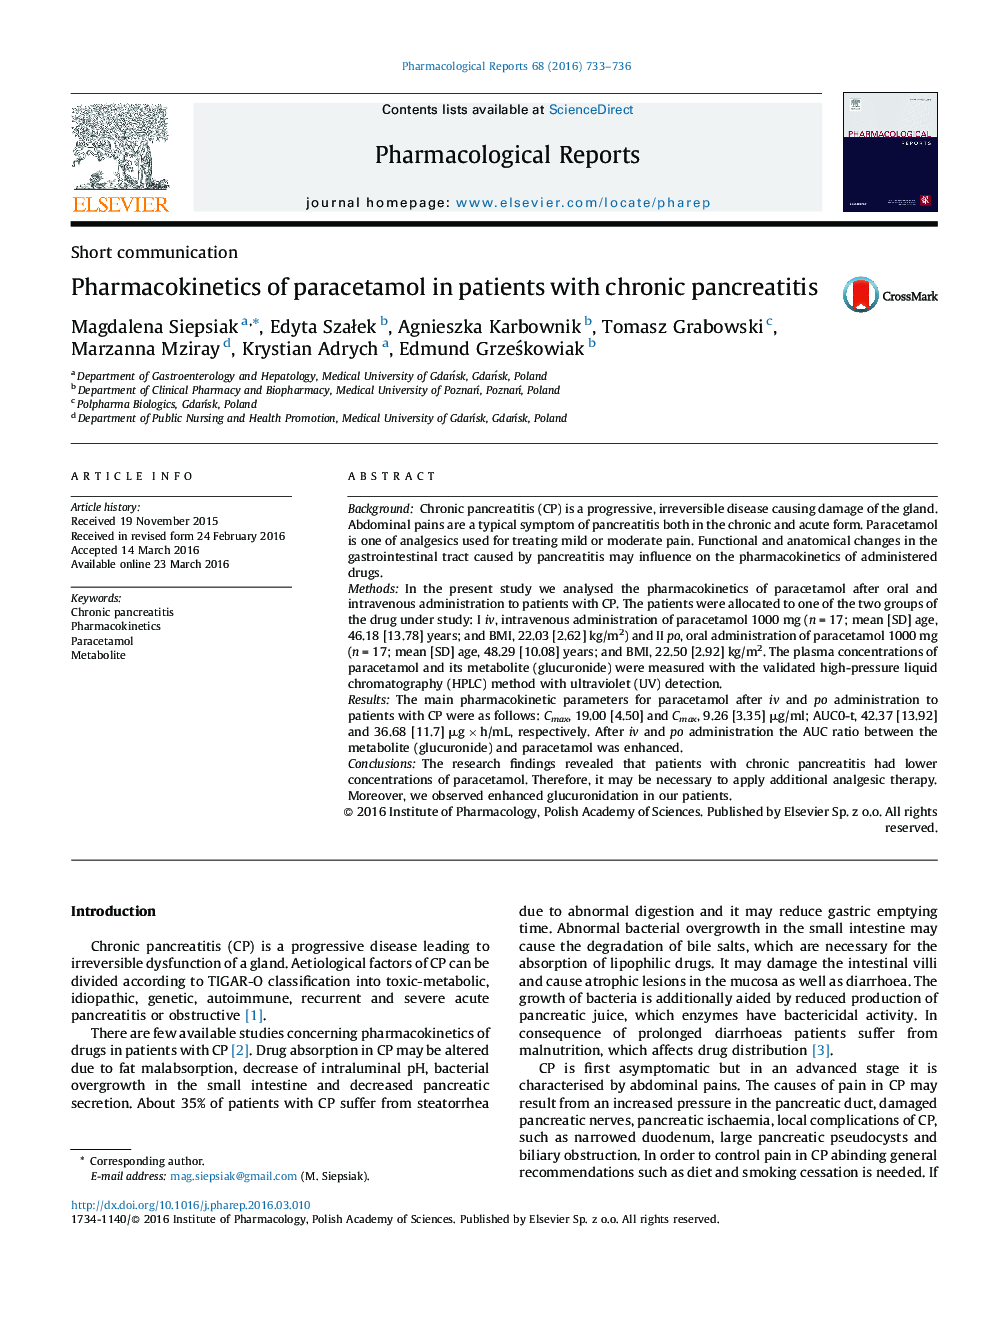 فارماکوکینتیک پاراستامول در بیماران مبتلا به پانکراتیت مزمن